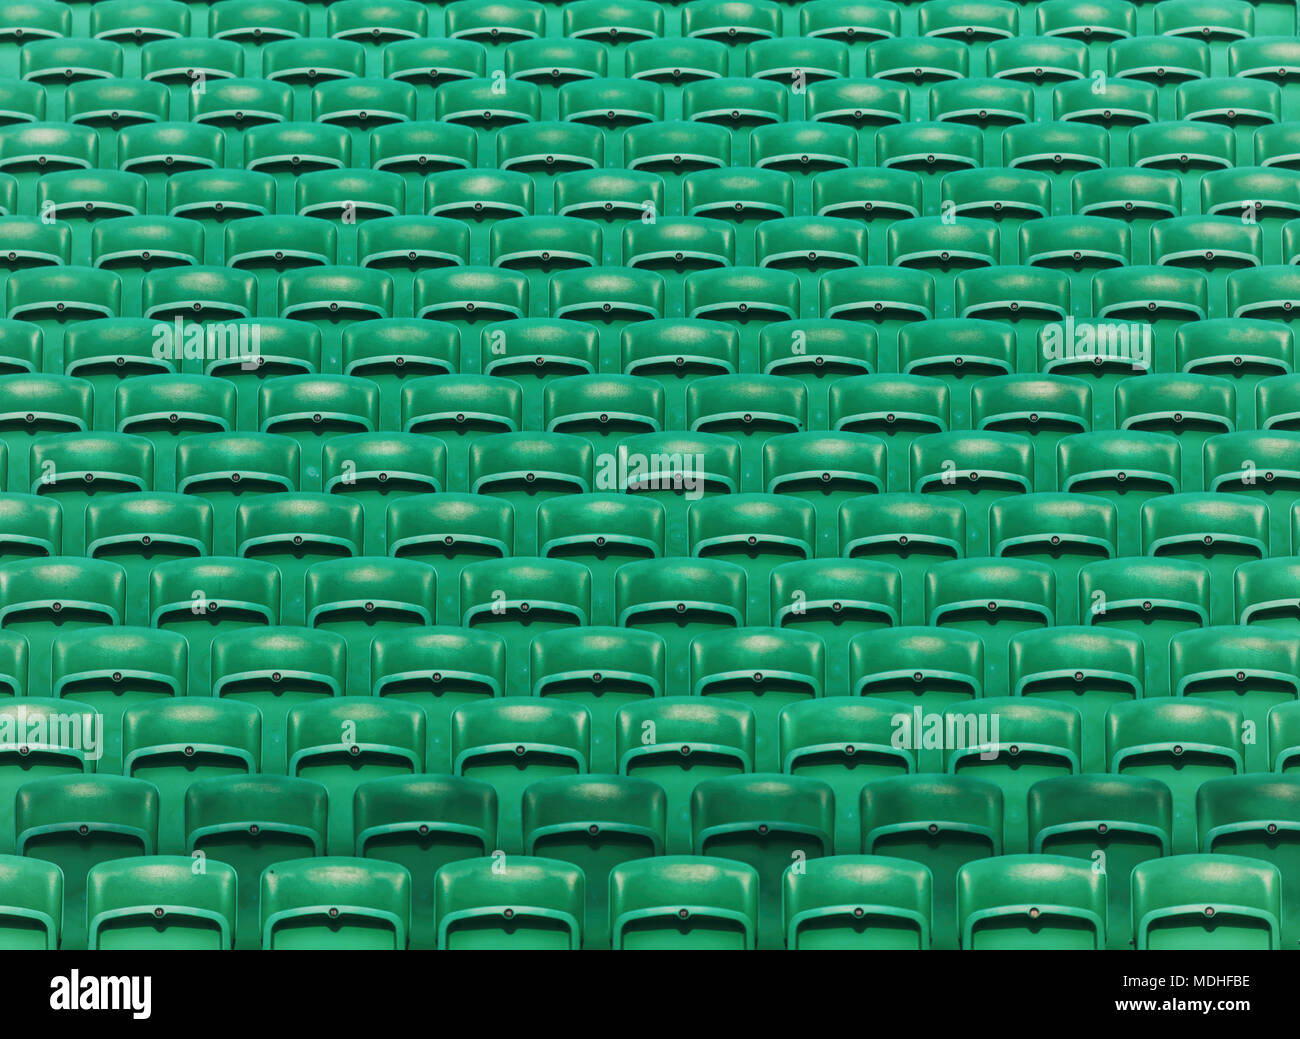 Reihen von grünen Leere falten Stadion sitze Hintergrund Stockfoto